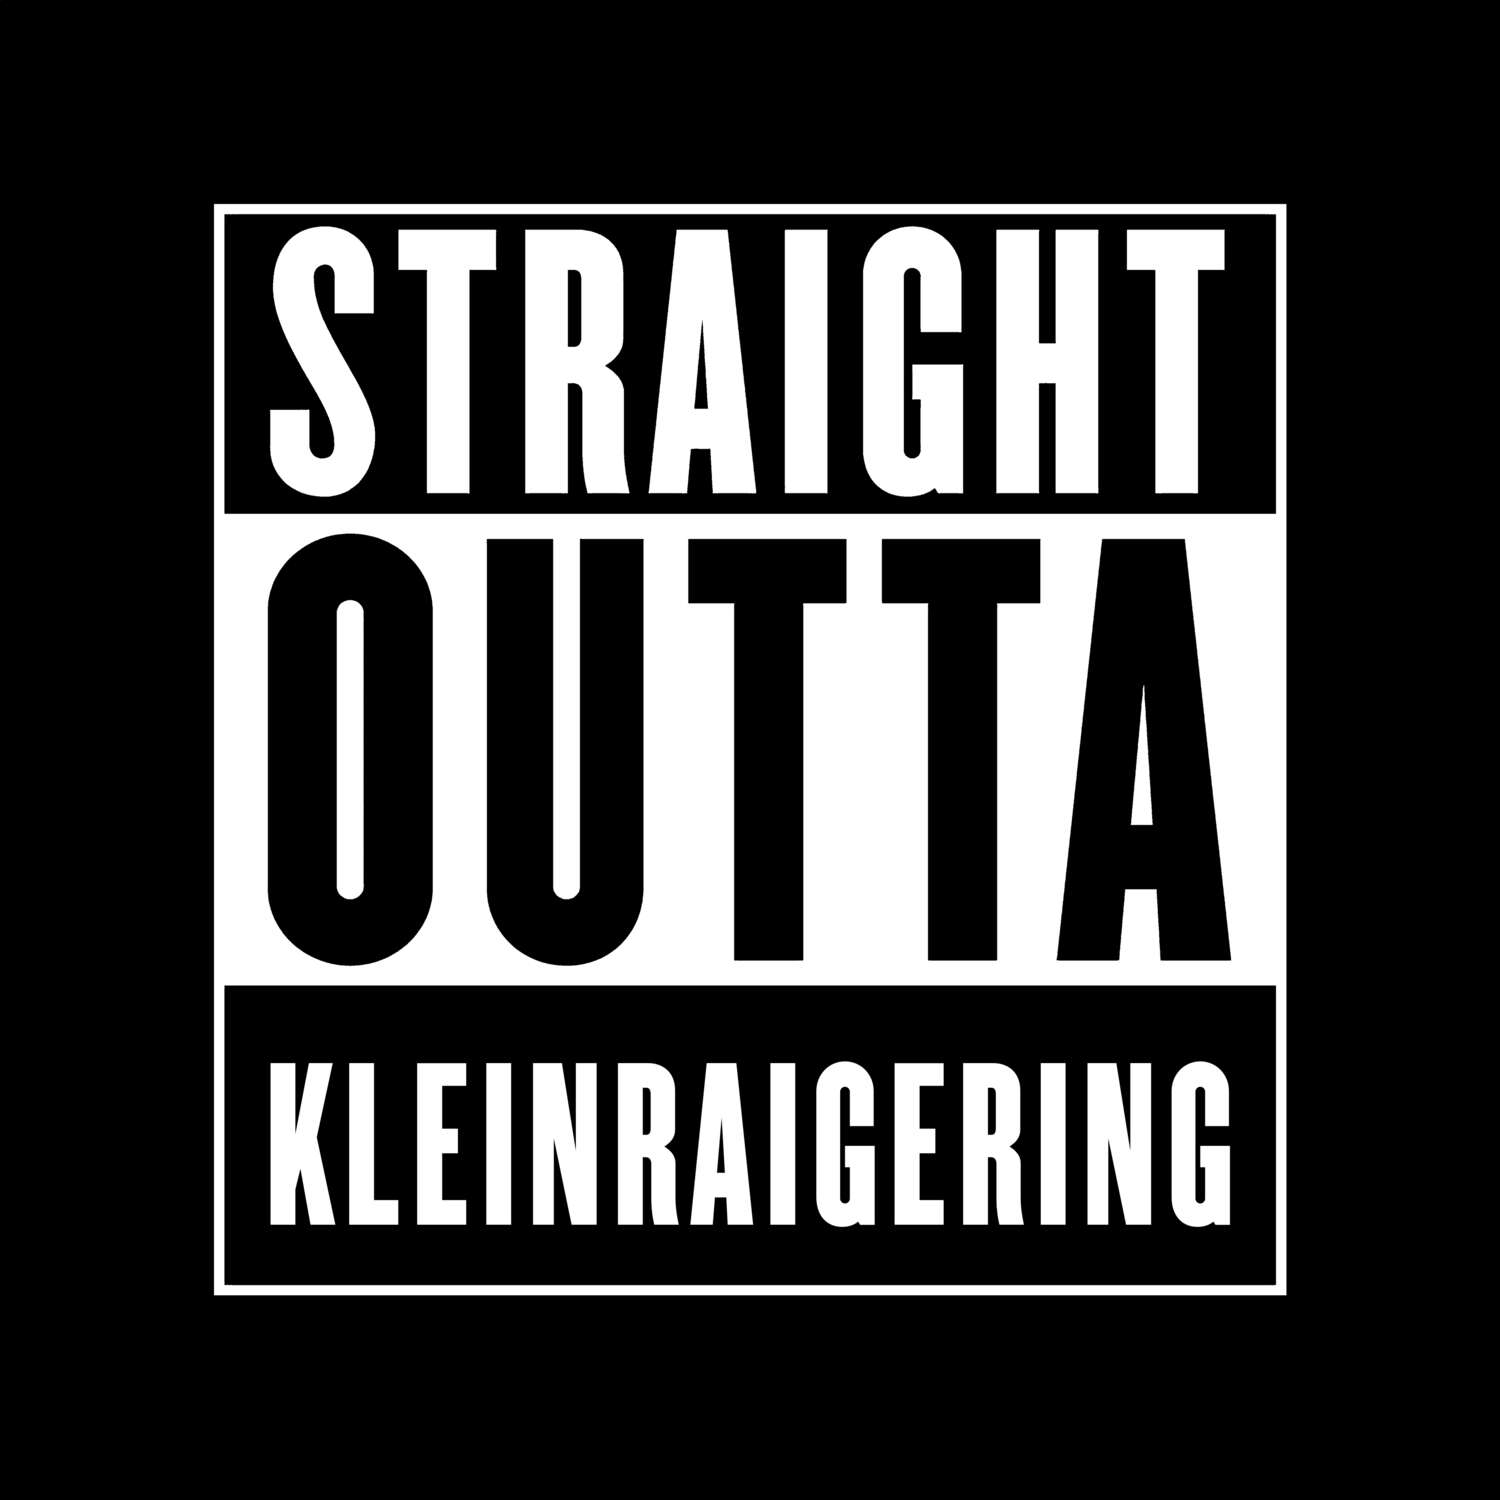 Kleinraigering T-Shirt »Straight Outta«